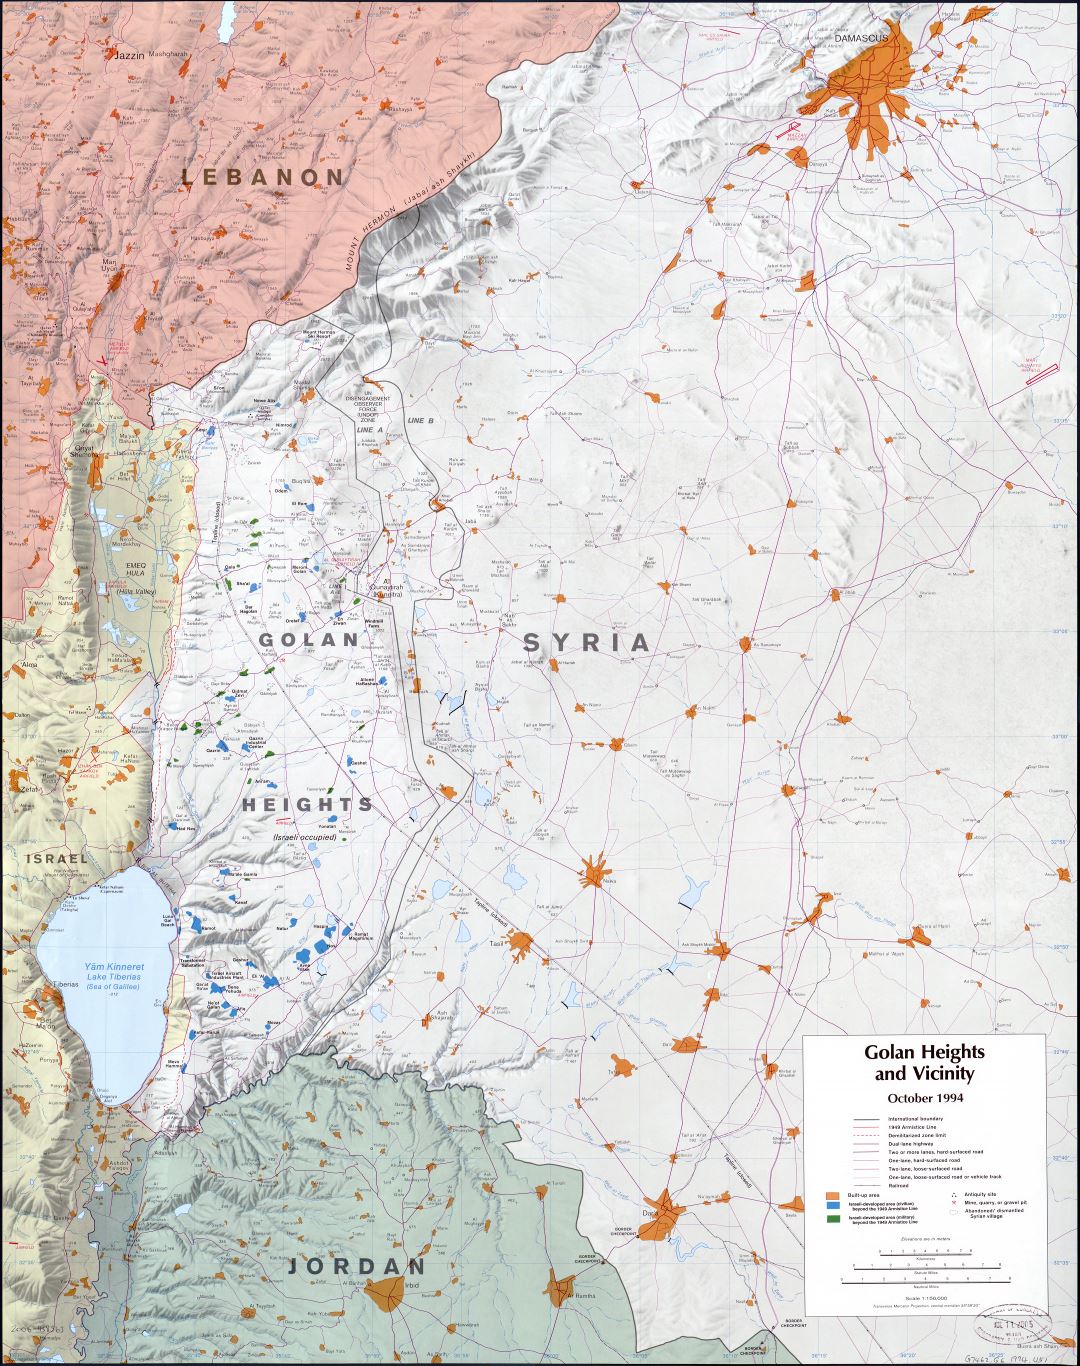 A gran escala mapa de los Altos del Golán y sus alrededores con relieve y otras marcas - 1994